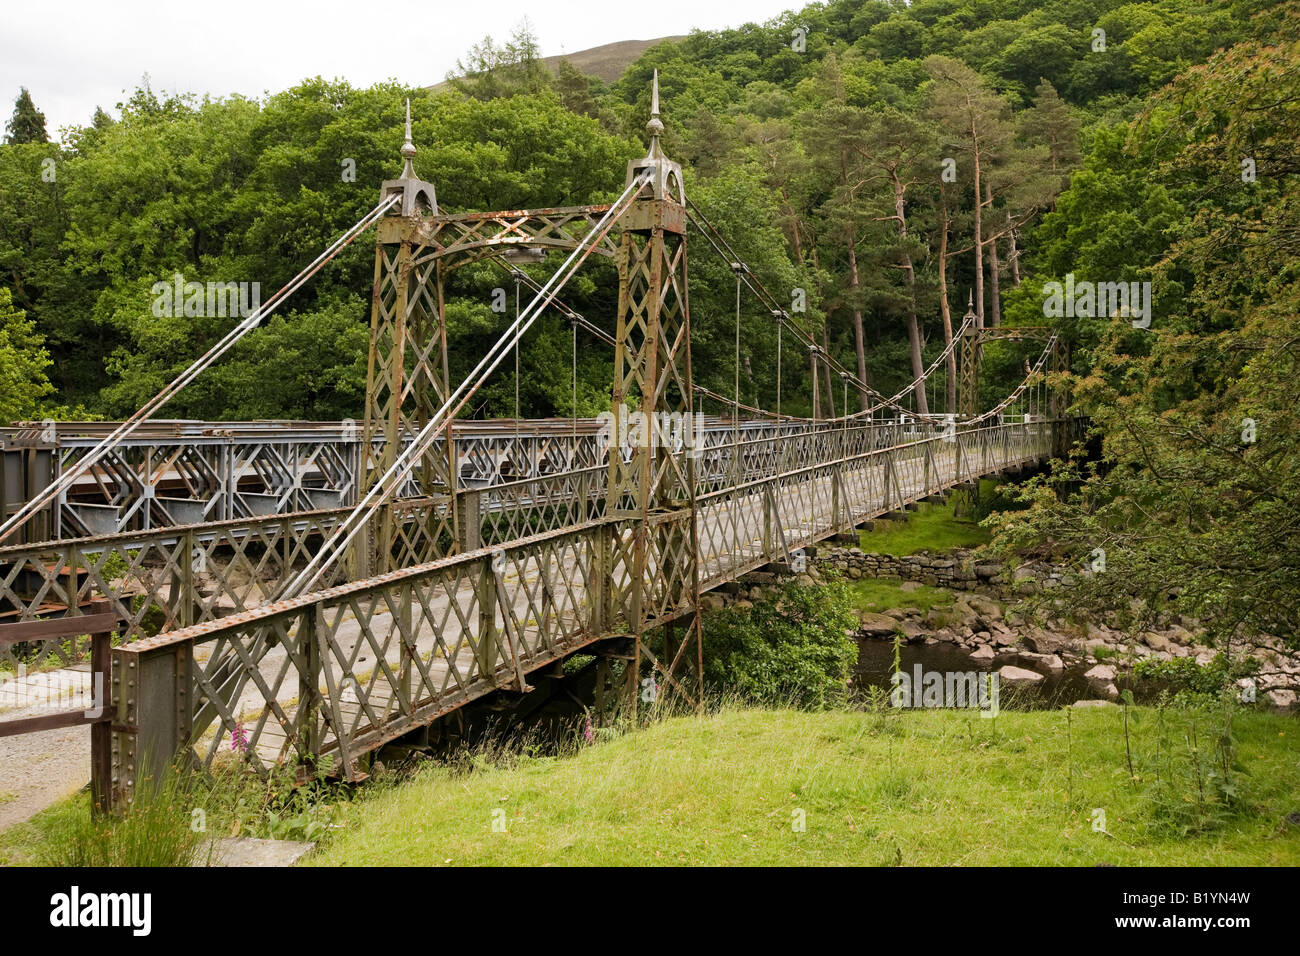 UK Wales Powys Rhayader Elan Valley old cast iron bridge over River Elan Stock Photo